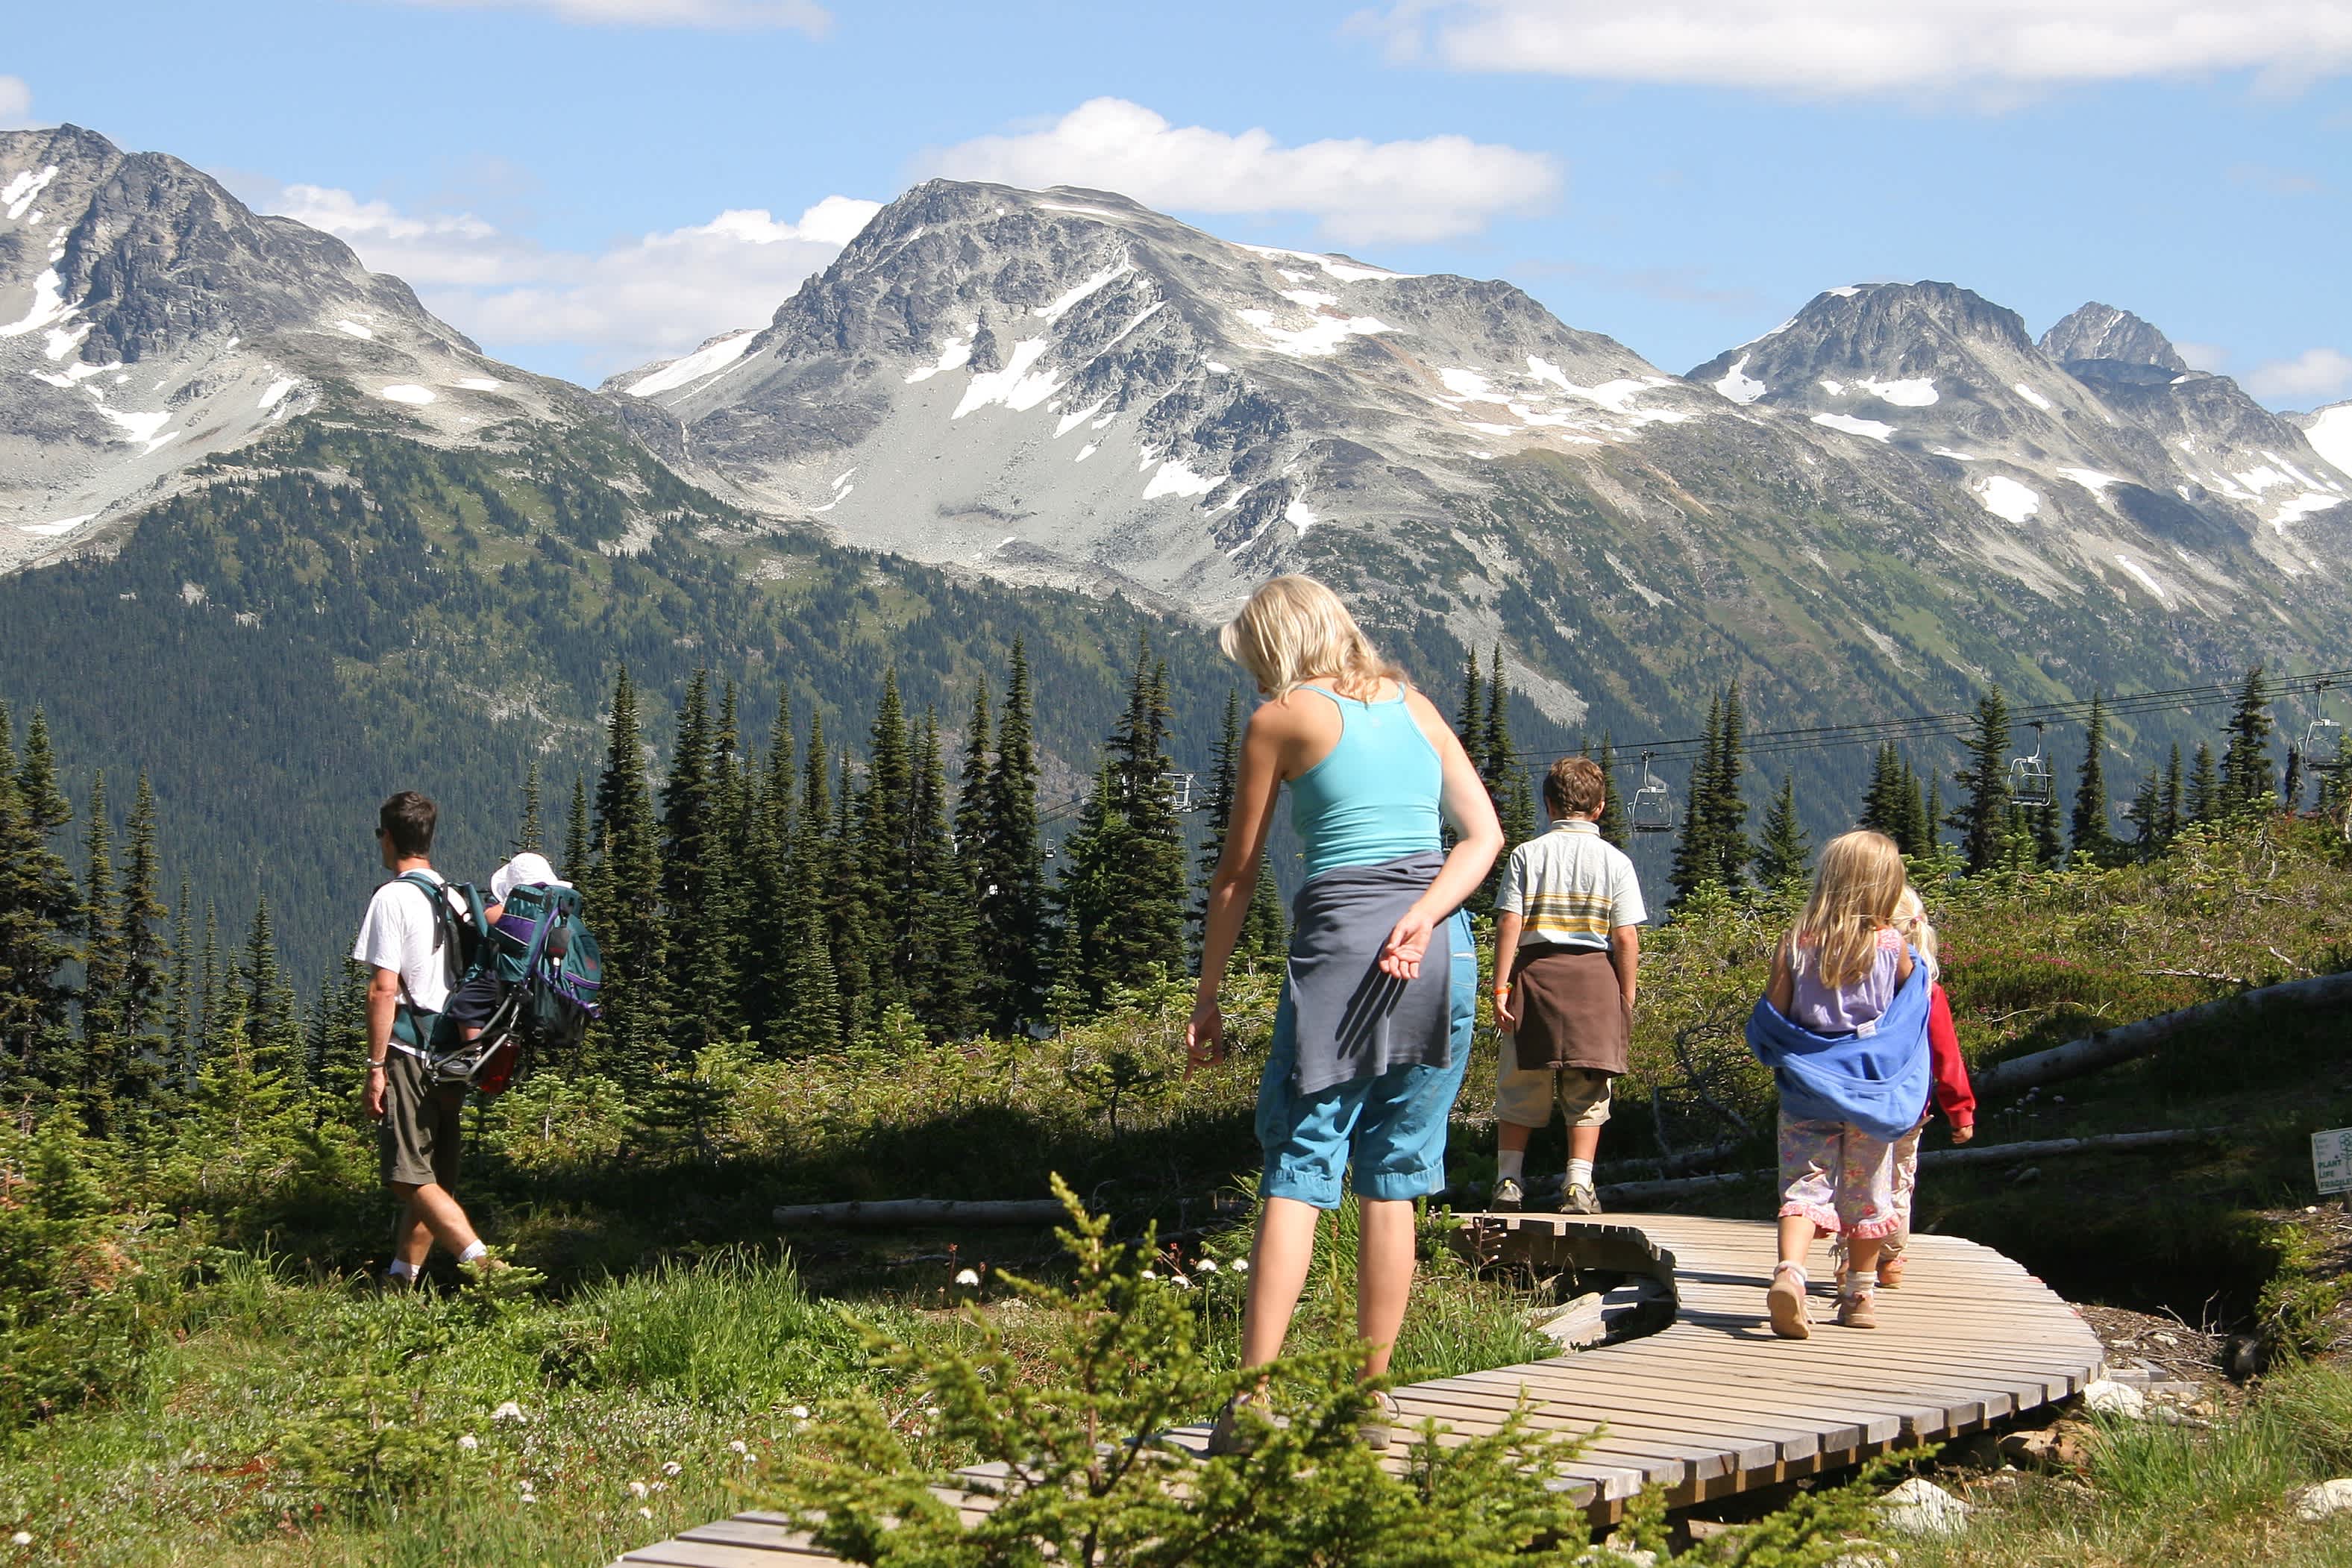 Familie beim Wandern entlang der Promenade mit Blick auf die Pflanzen und Berge in Alaska.
